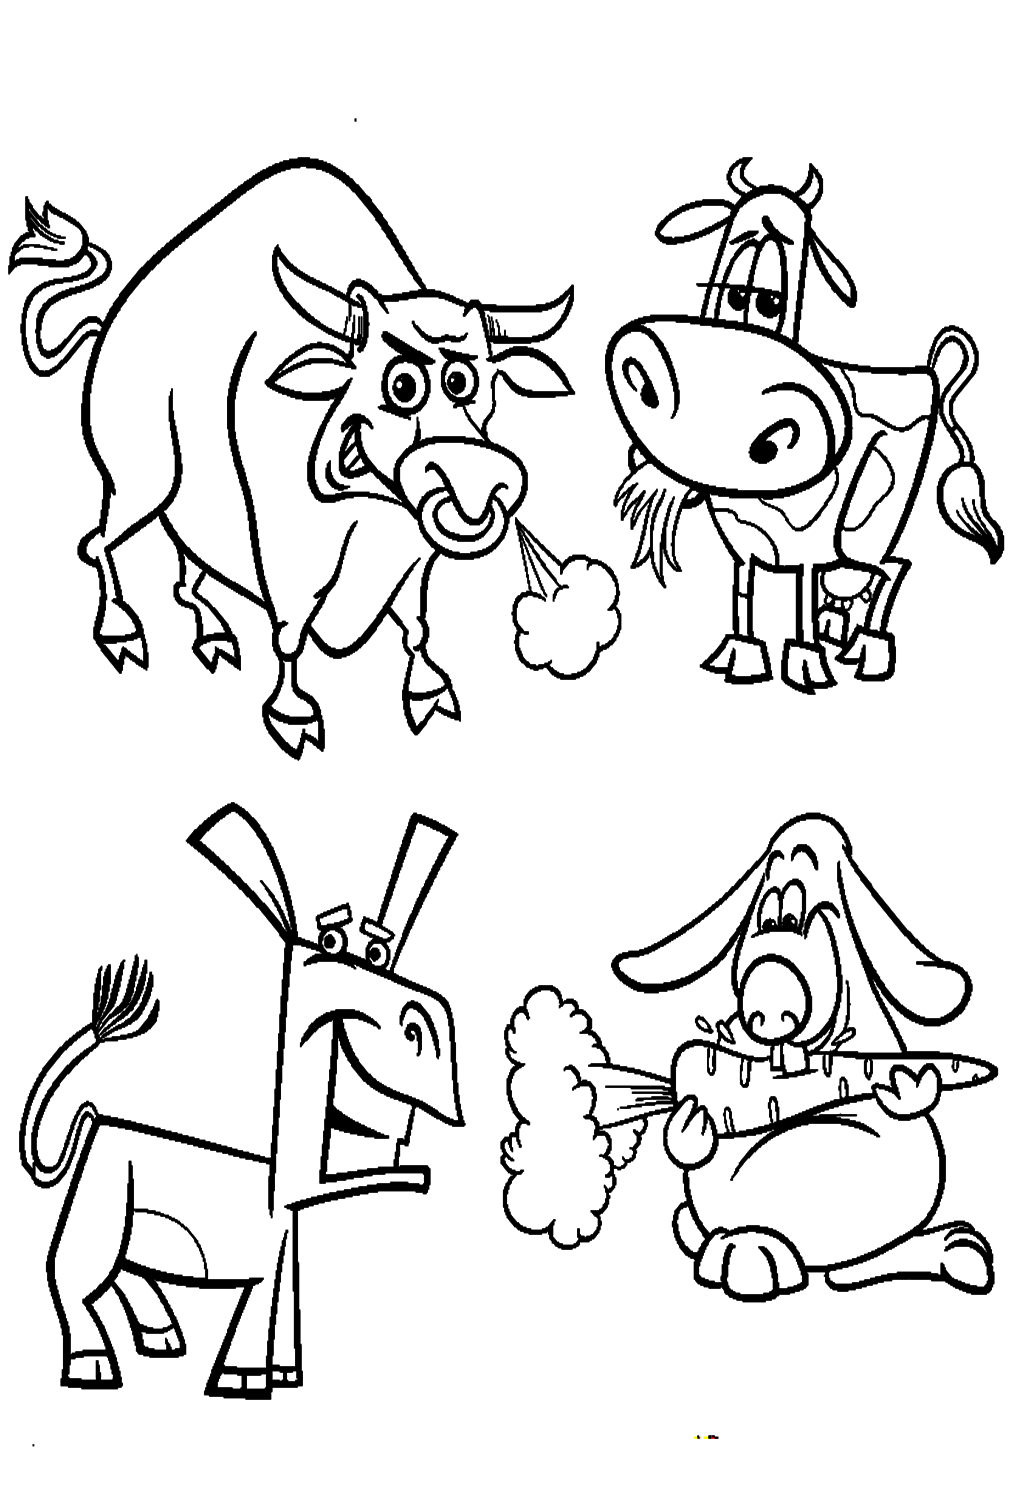 Taureau et ensemble d'animaux de dessin animé de Bull